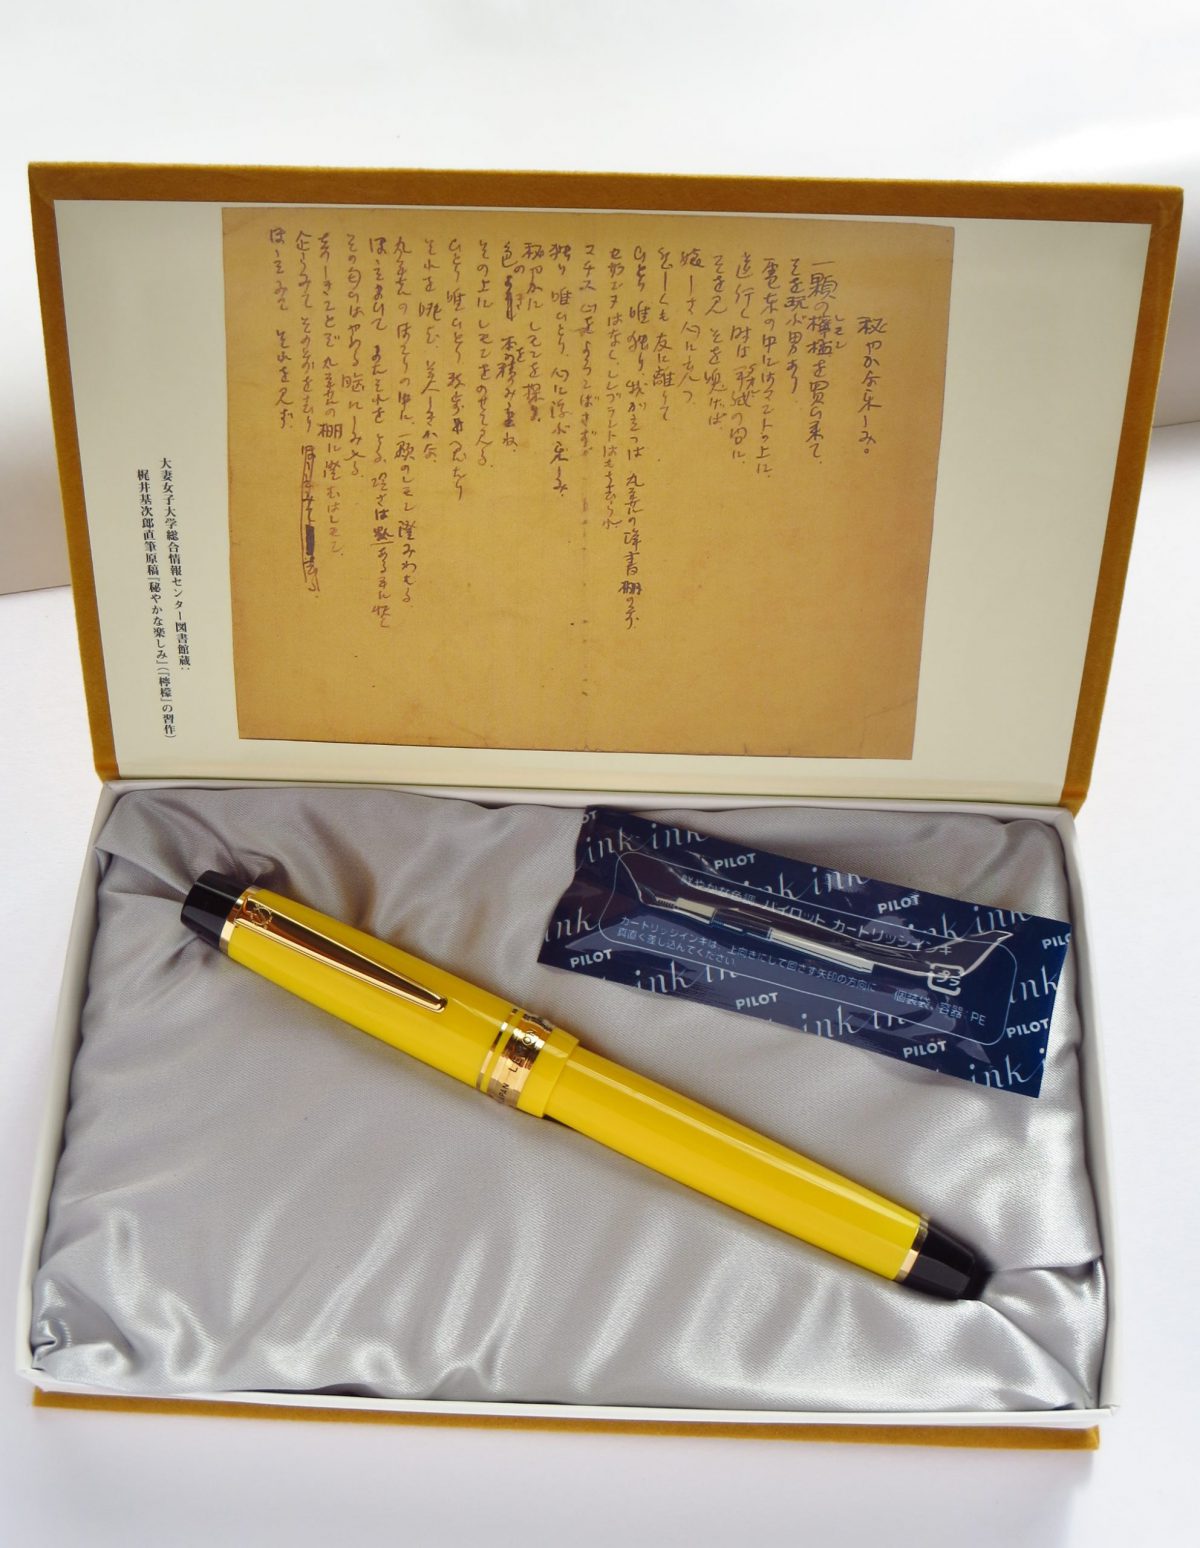 万年筆の中古品新入荷情報は丸善さんの140周年記念の万年筆「檸檬」です